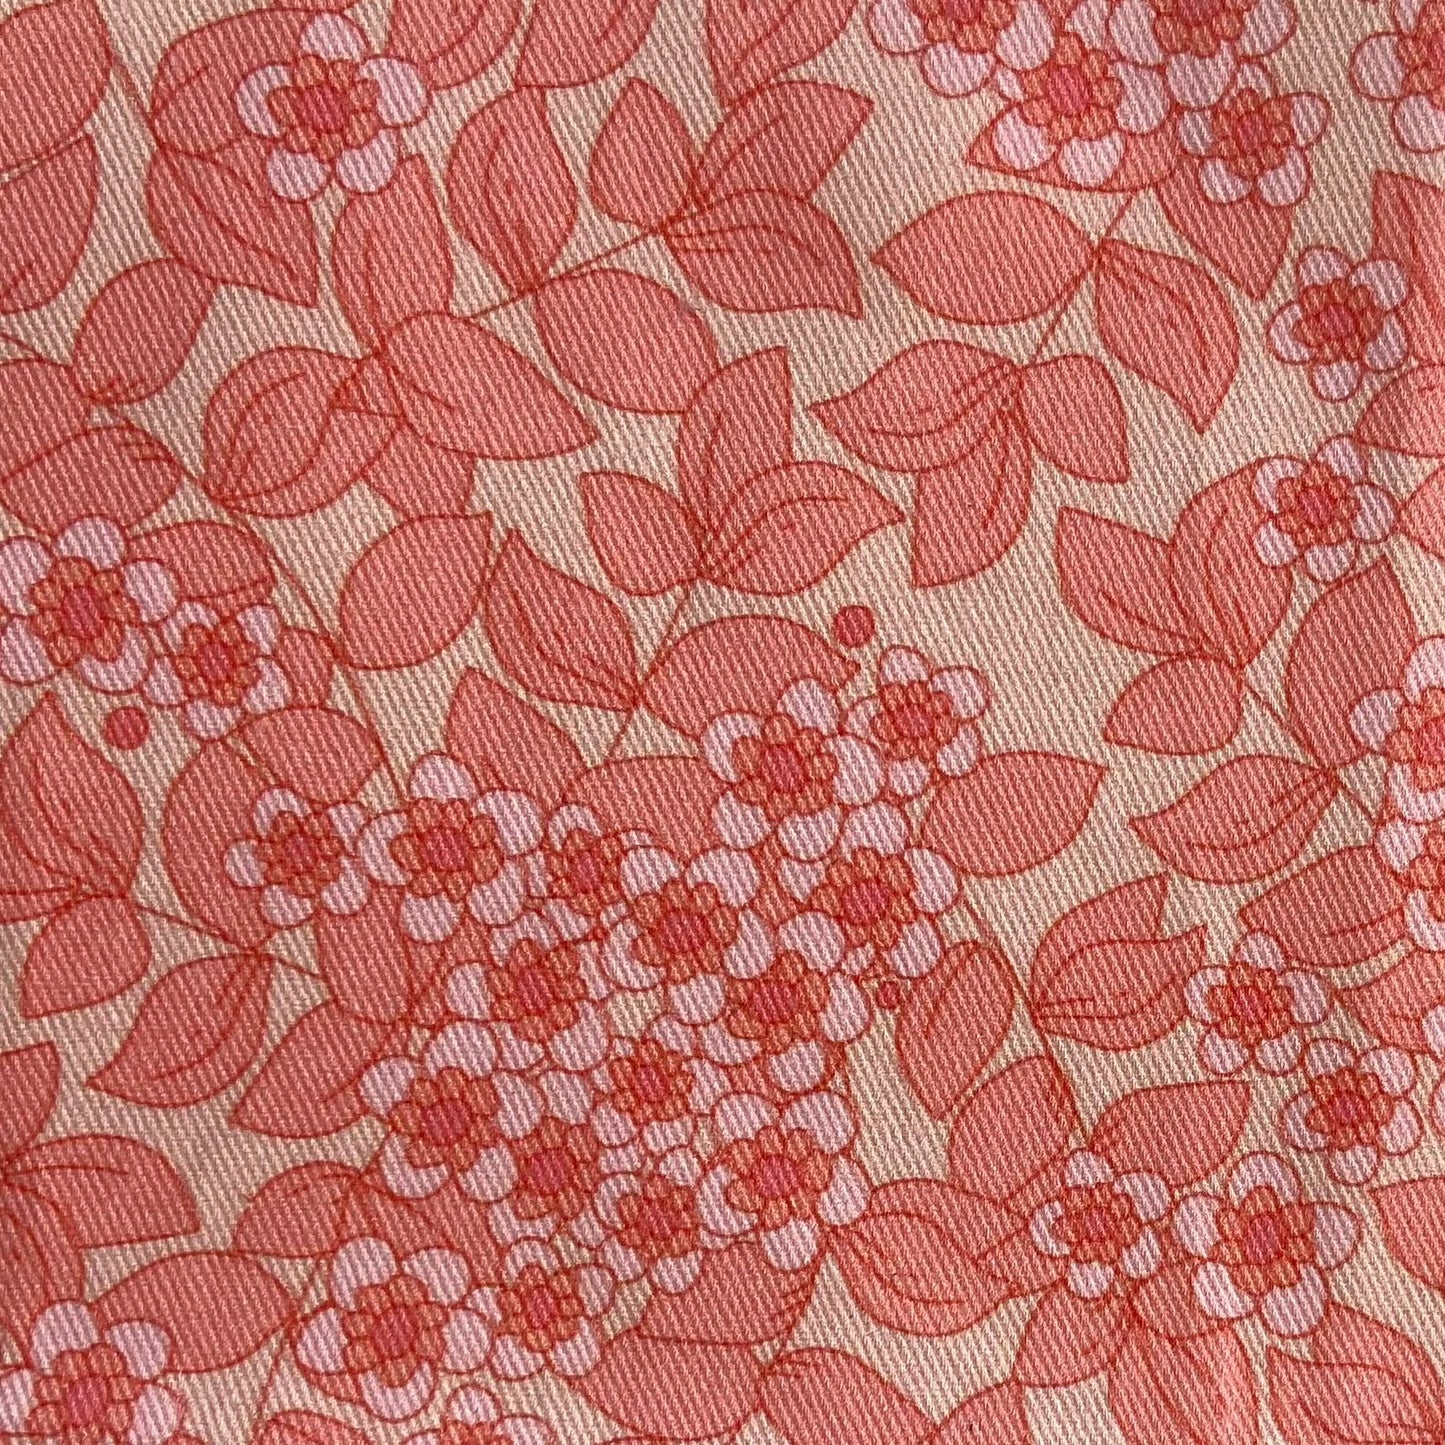 Sergé de coton imprimé motif fleuri sur fond rose saumon fleurs feuilles ton-sur-ton romantique vintage classique 